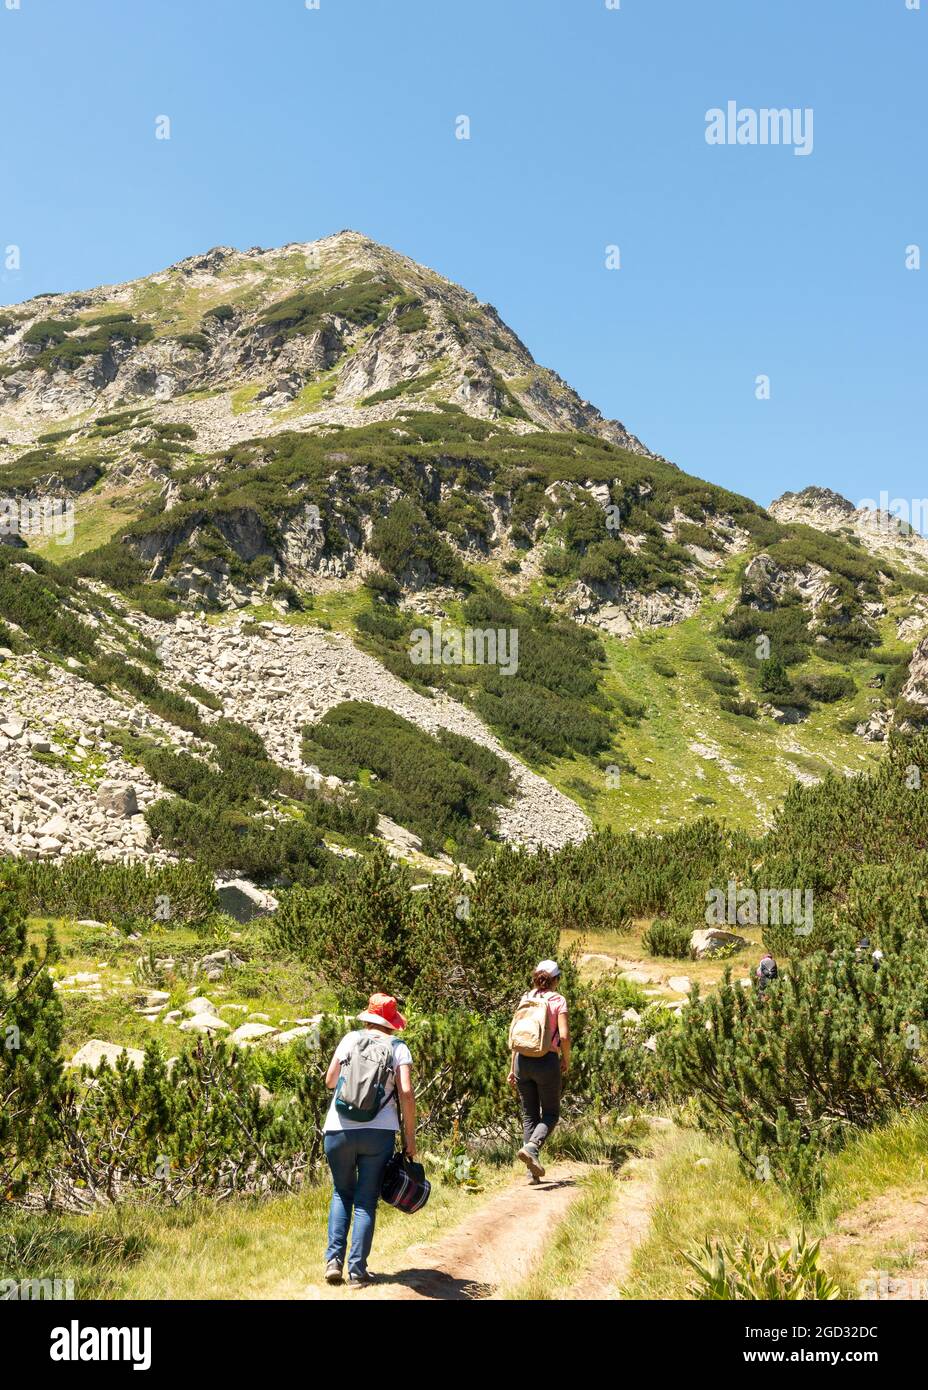 Bulgarie randonnée. Randonneurs sur un sentier de randonnée approchant le pic de Muratov dans le parc national et réserve de Pirin, montagne de Pirin, Bulgarie, Balkans, Europe Banque D'Images